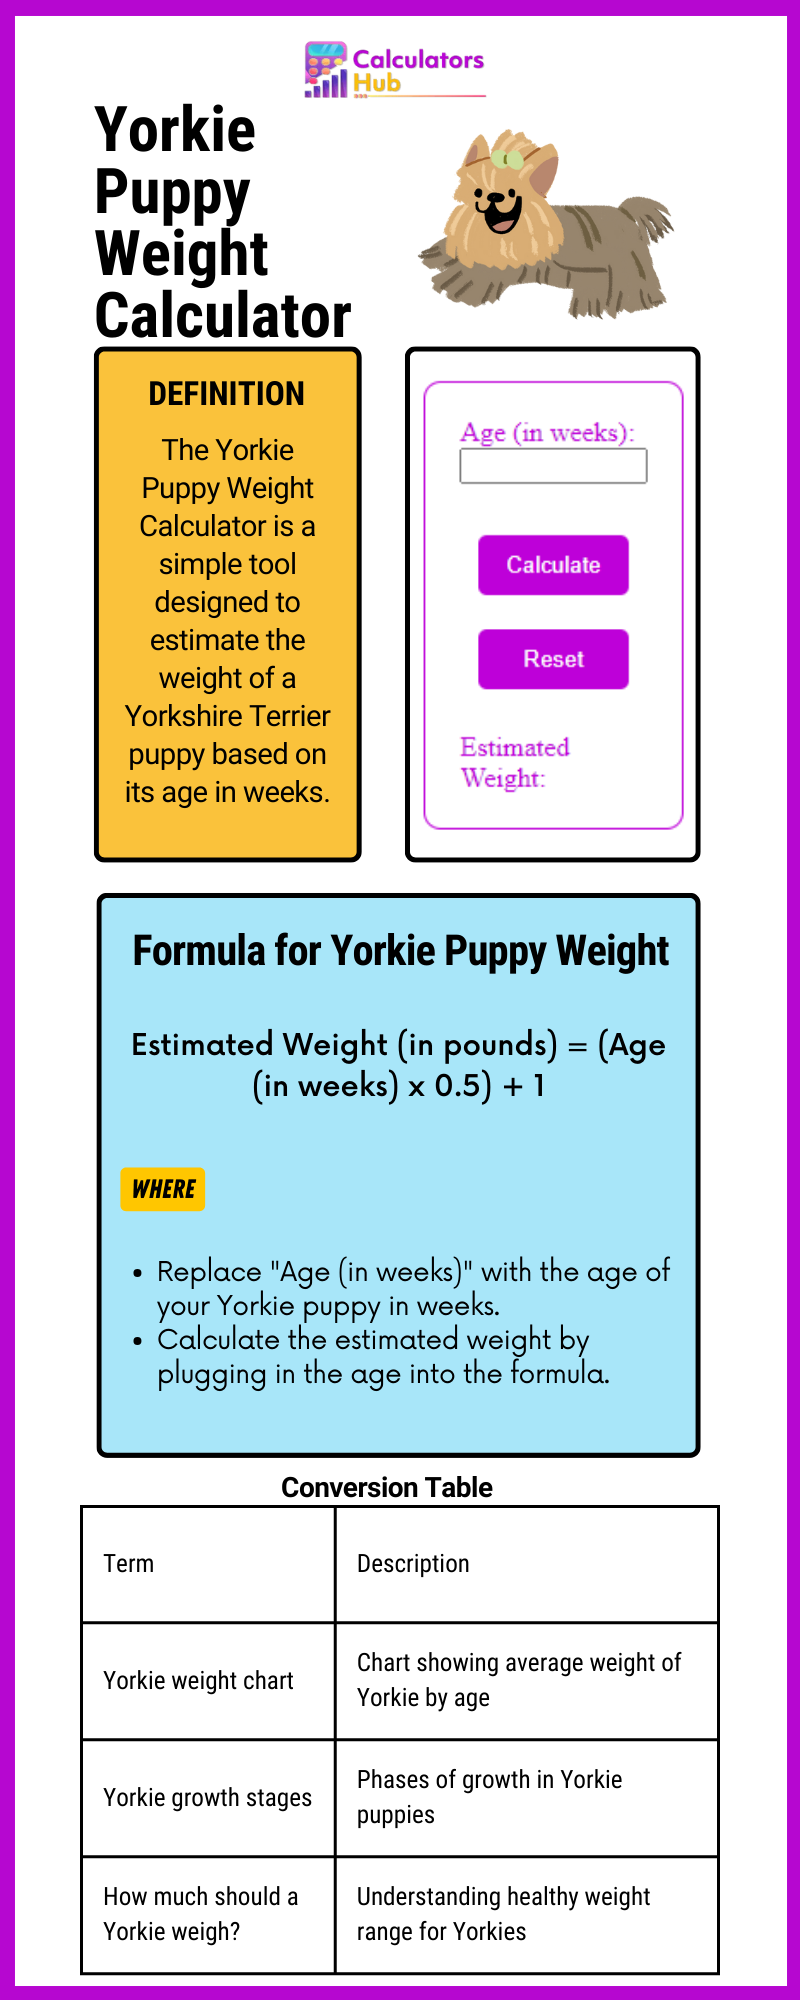 Yorkie Puppy Weight Calculator